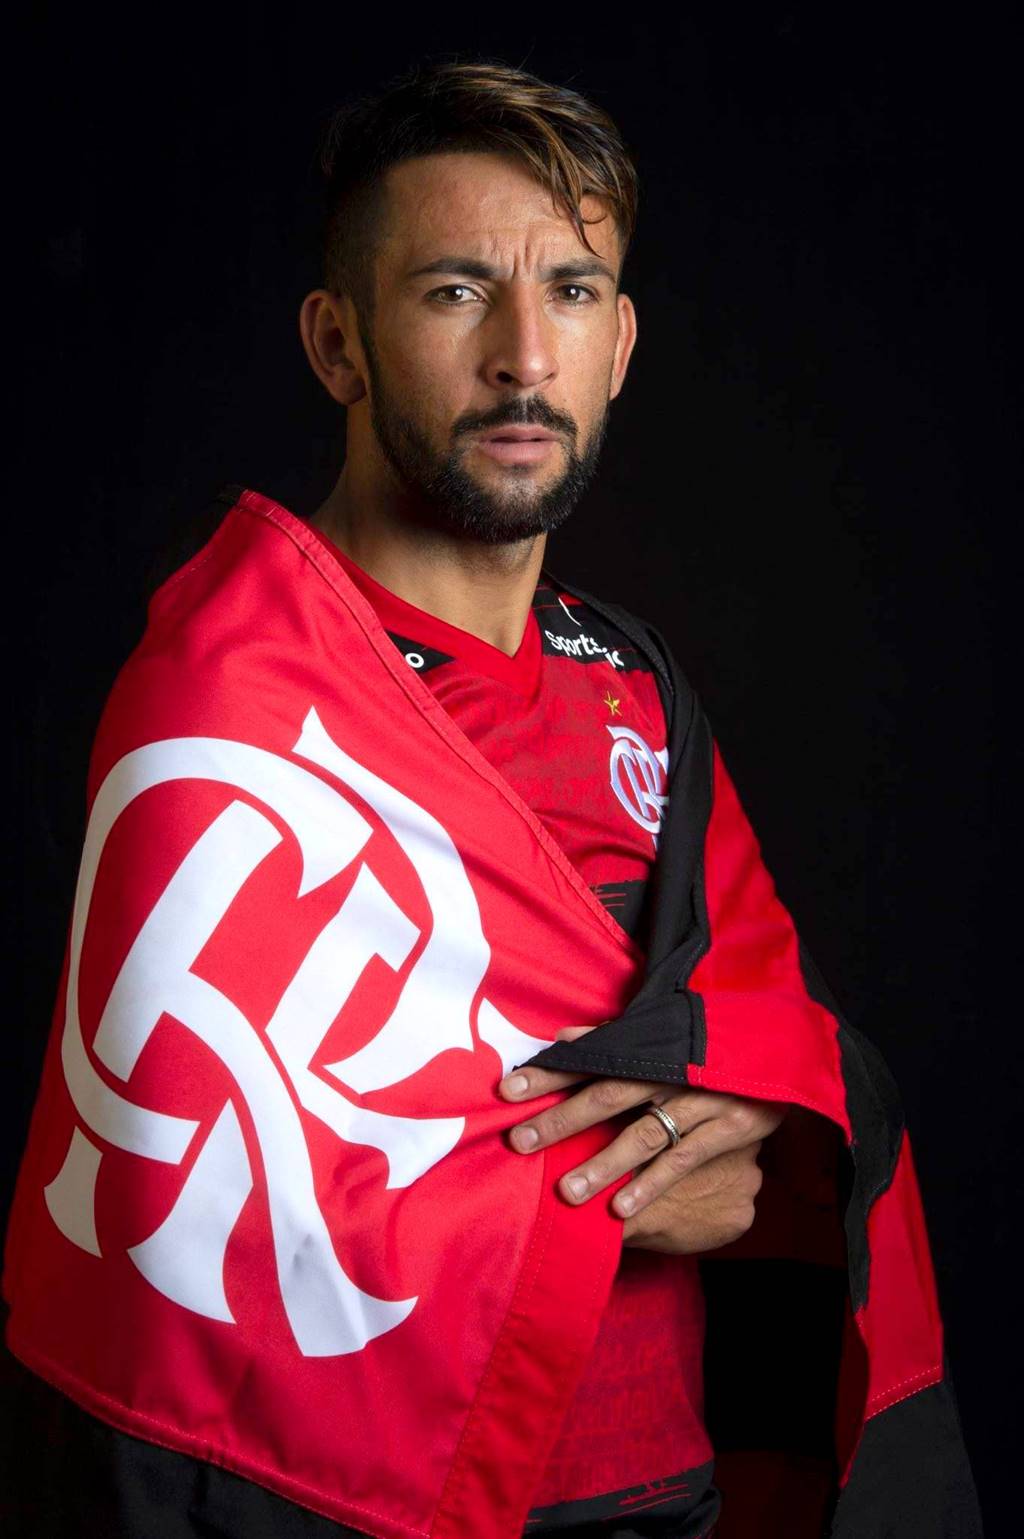 Maurício Isla não joga mais pelo Flamengo FlaResenha